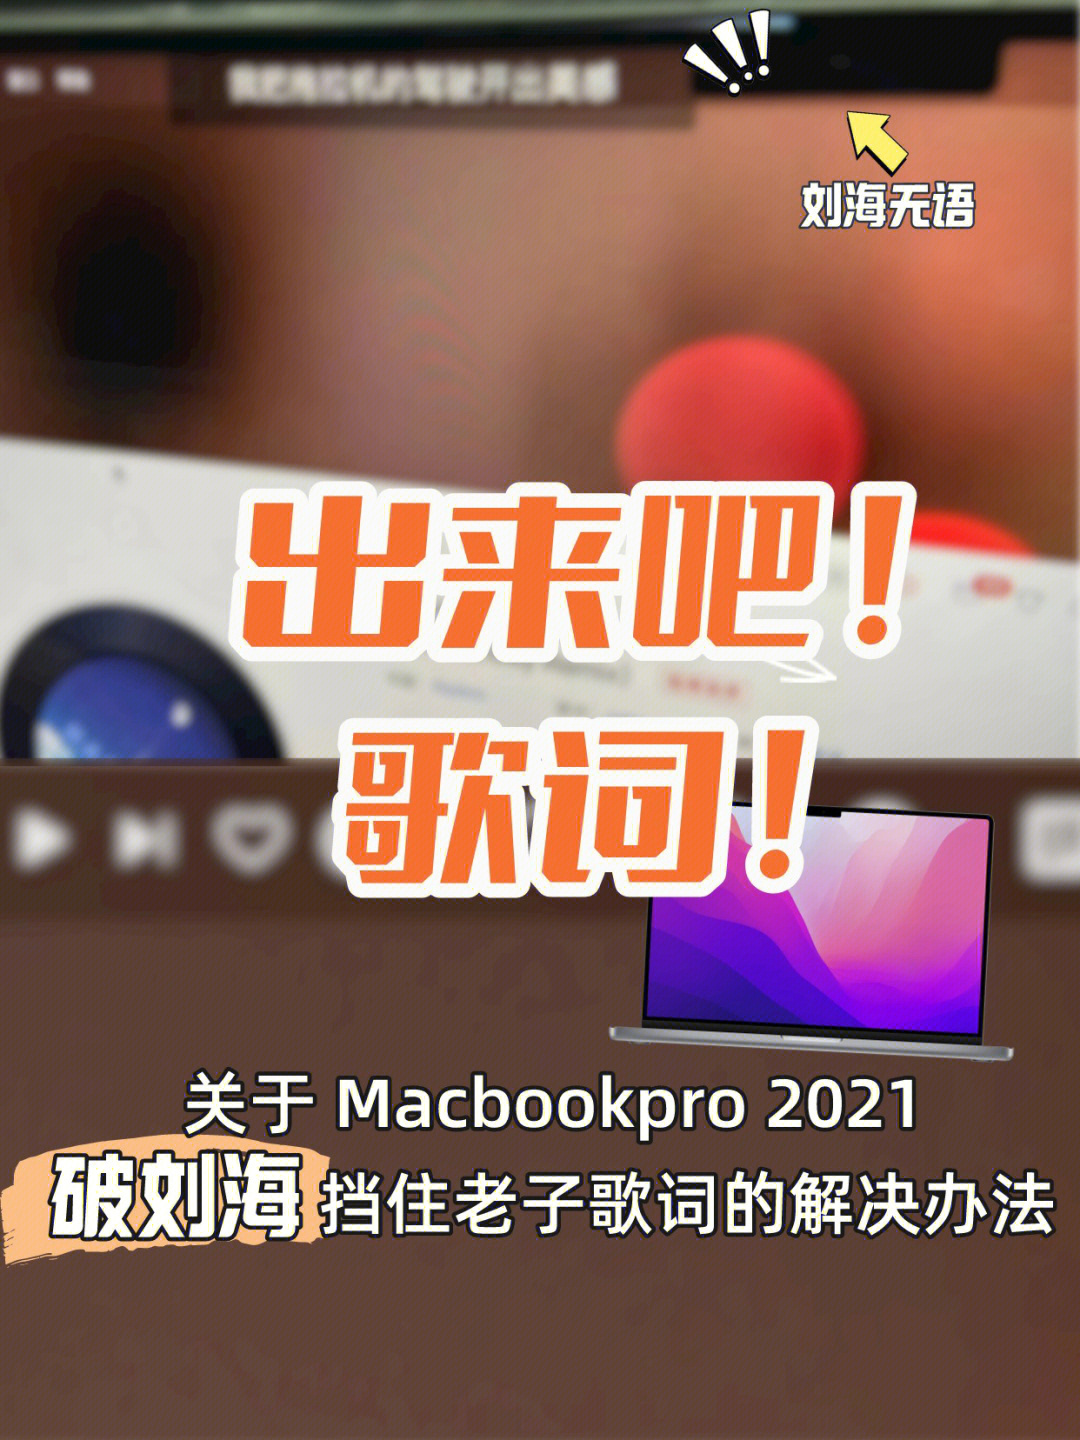 完美解决macbookpro2021歌词问题